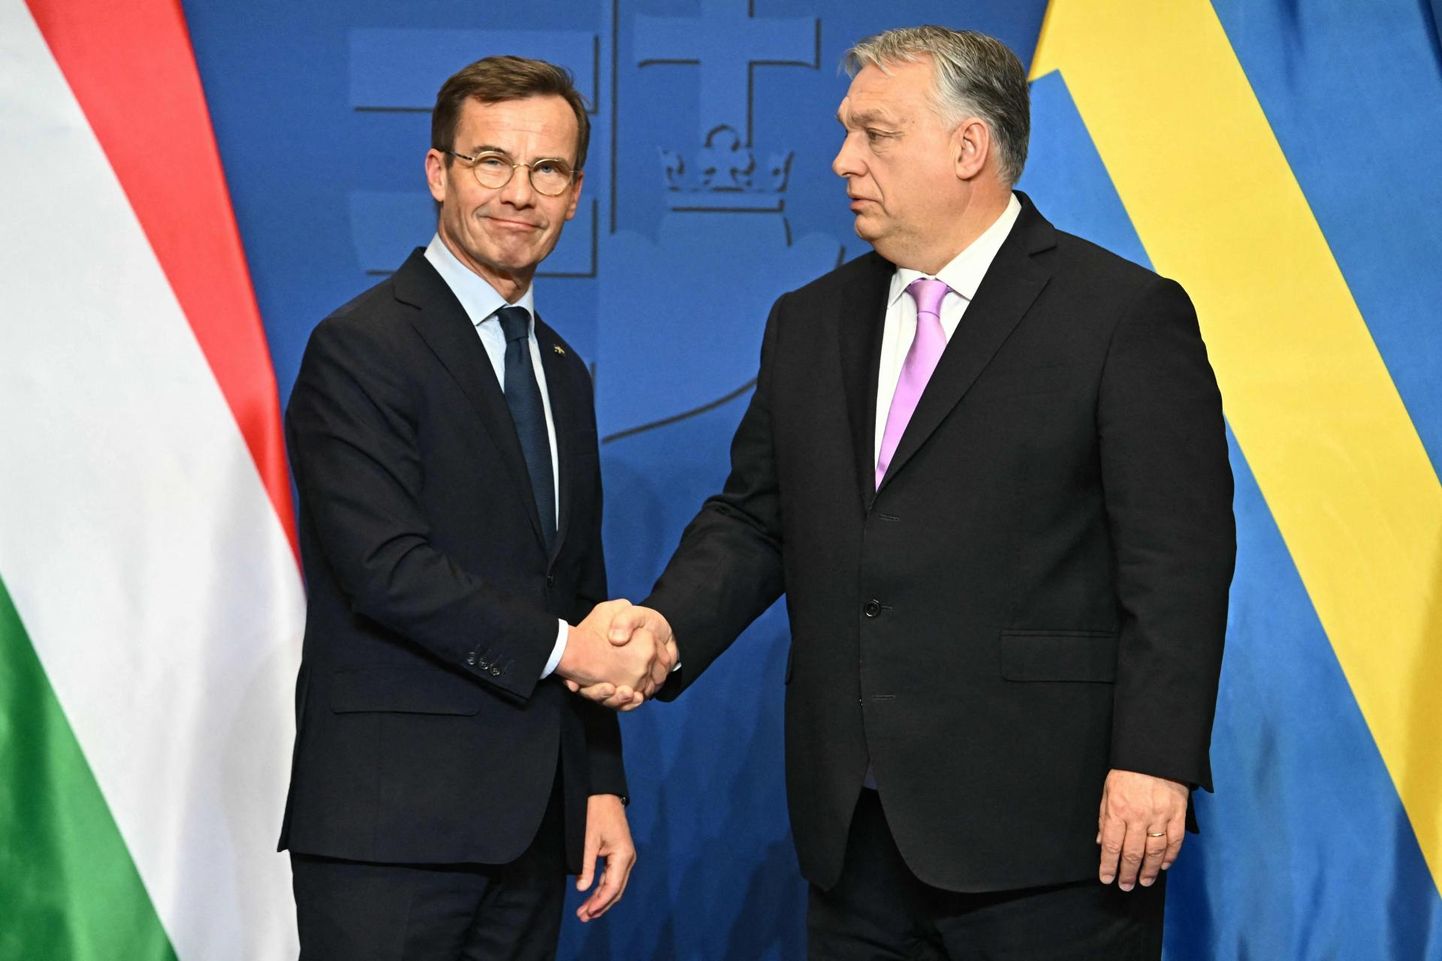 Selleks, et Ungari pikaajaline ratifitseerimisprotssessiga venitamine lõpetada, pakkus Rootsi Ungarile poliitilise vahetuskaubana neli hävitajat. Ja sellest piisas, et Ungari peaminister Viktor Orbán (paremal) Rootsi NATOga liitumisele oma õnnistuse annaks. Fotol Rootsi peaminister Ulf Kristersson (vasakul) Orbániga möödunud reedel suhteid soojendamas.